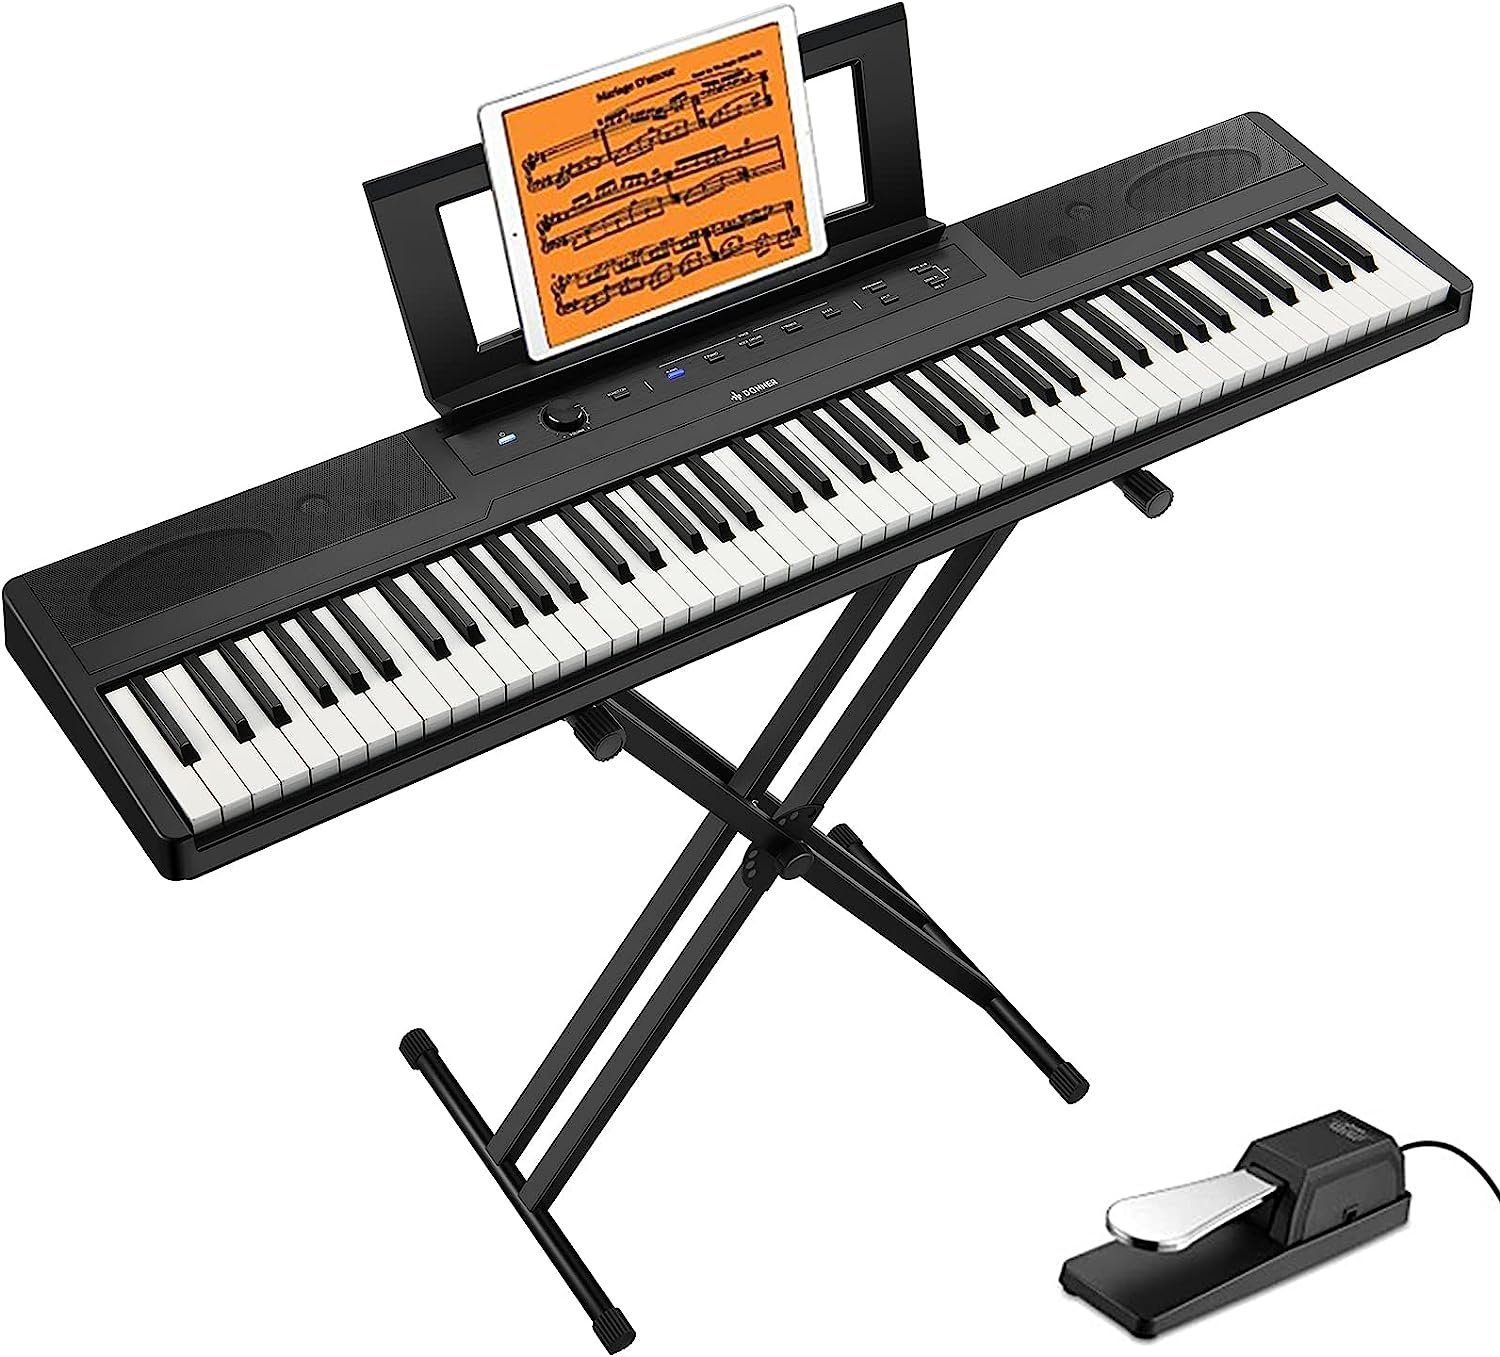 Donner Keyboard DEP-45 E Piano Digital Piano Keyboard 88 tasten, (1x  Keyboard, 1x Ständer, 1x Sustain-Pedal), mit Pedal,ideal fur  Piano-Einsteiger,Multimedia-Bedienfeld,Ständer